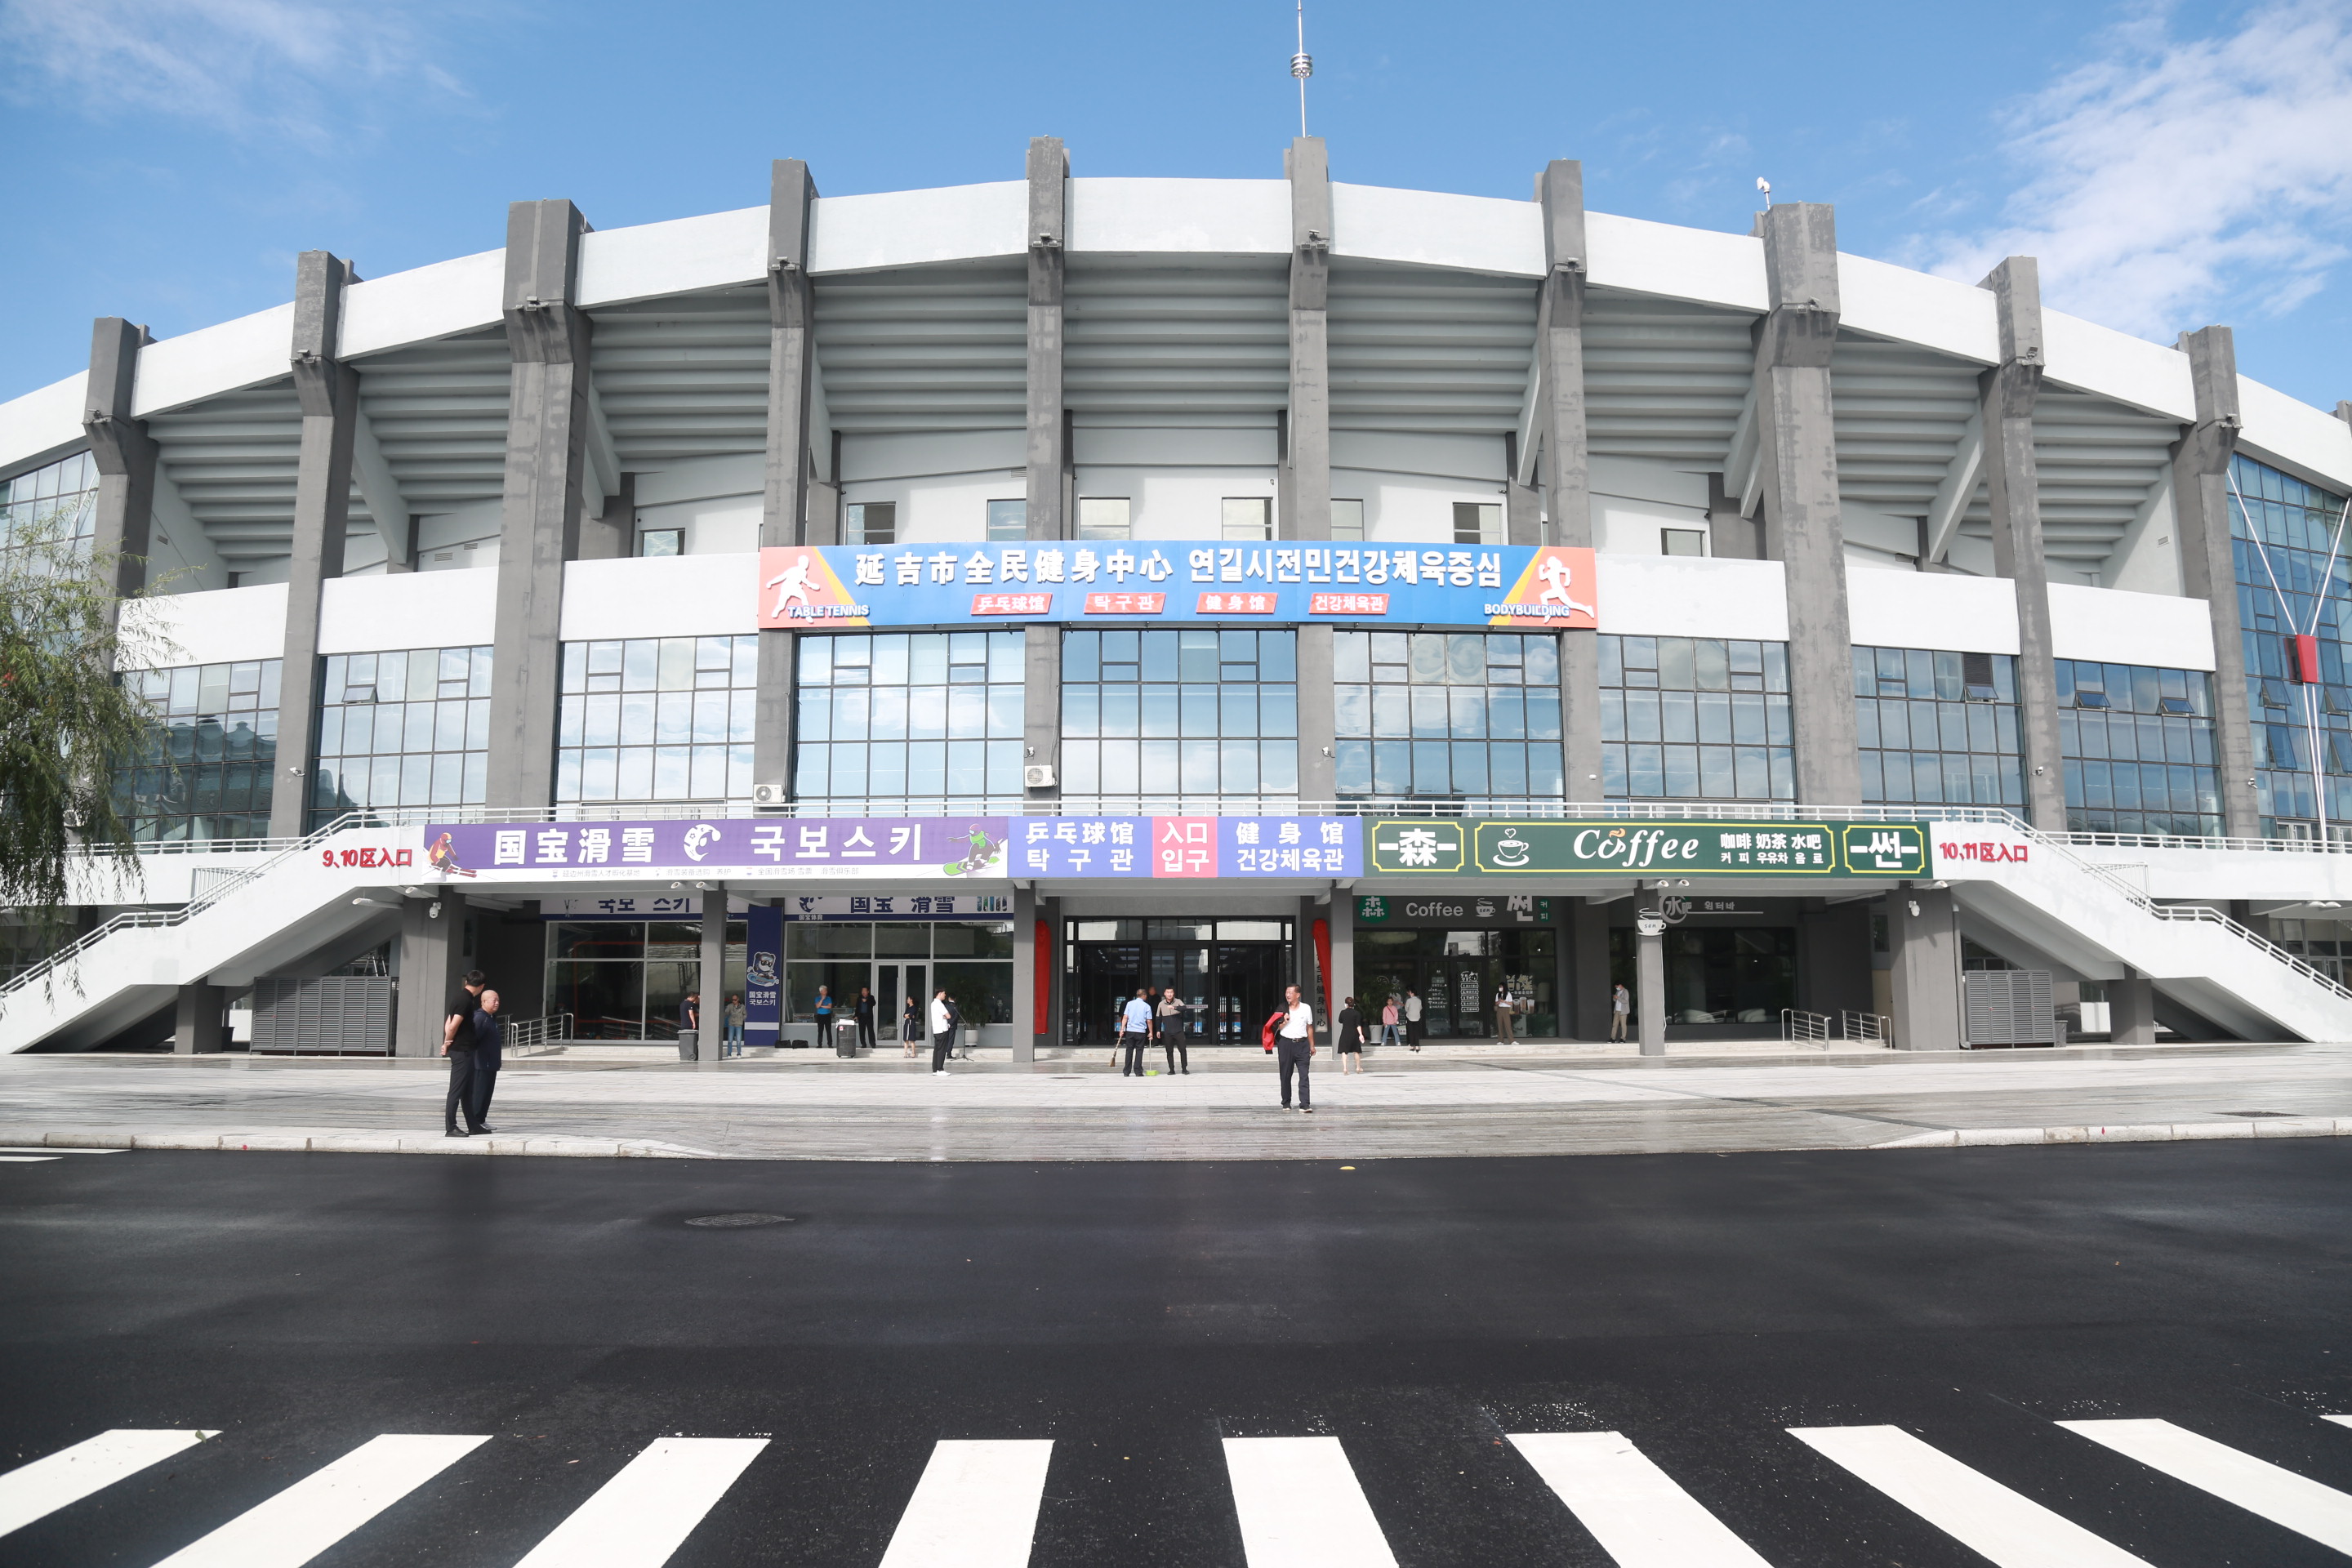 延吉市人民体育场入选全国公共体育场馆开放使用典型案例名单